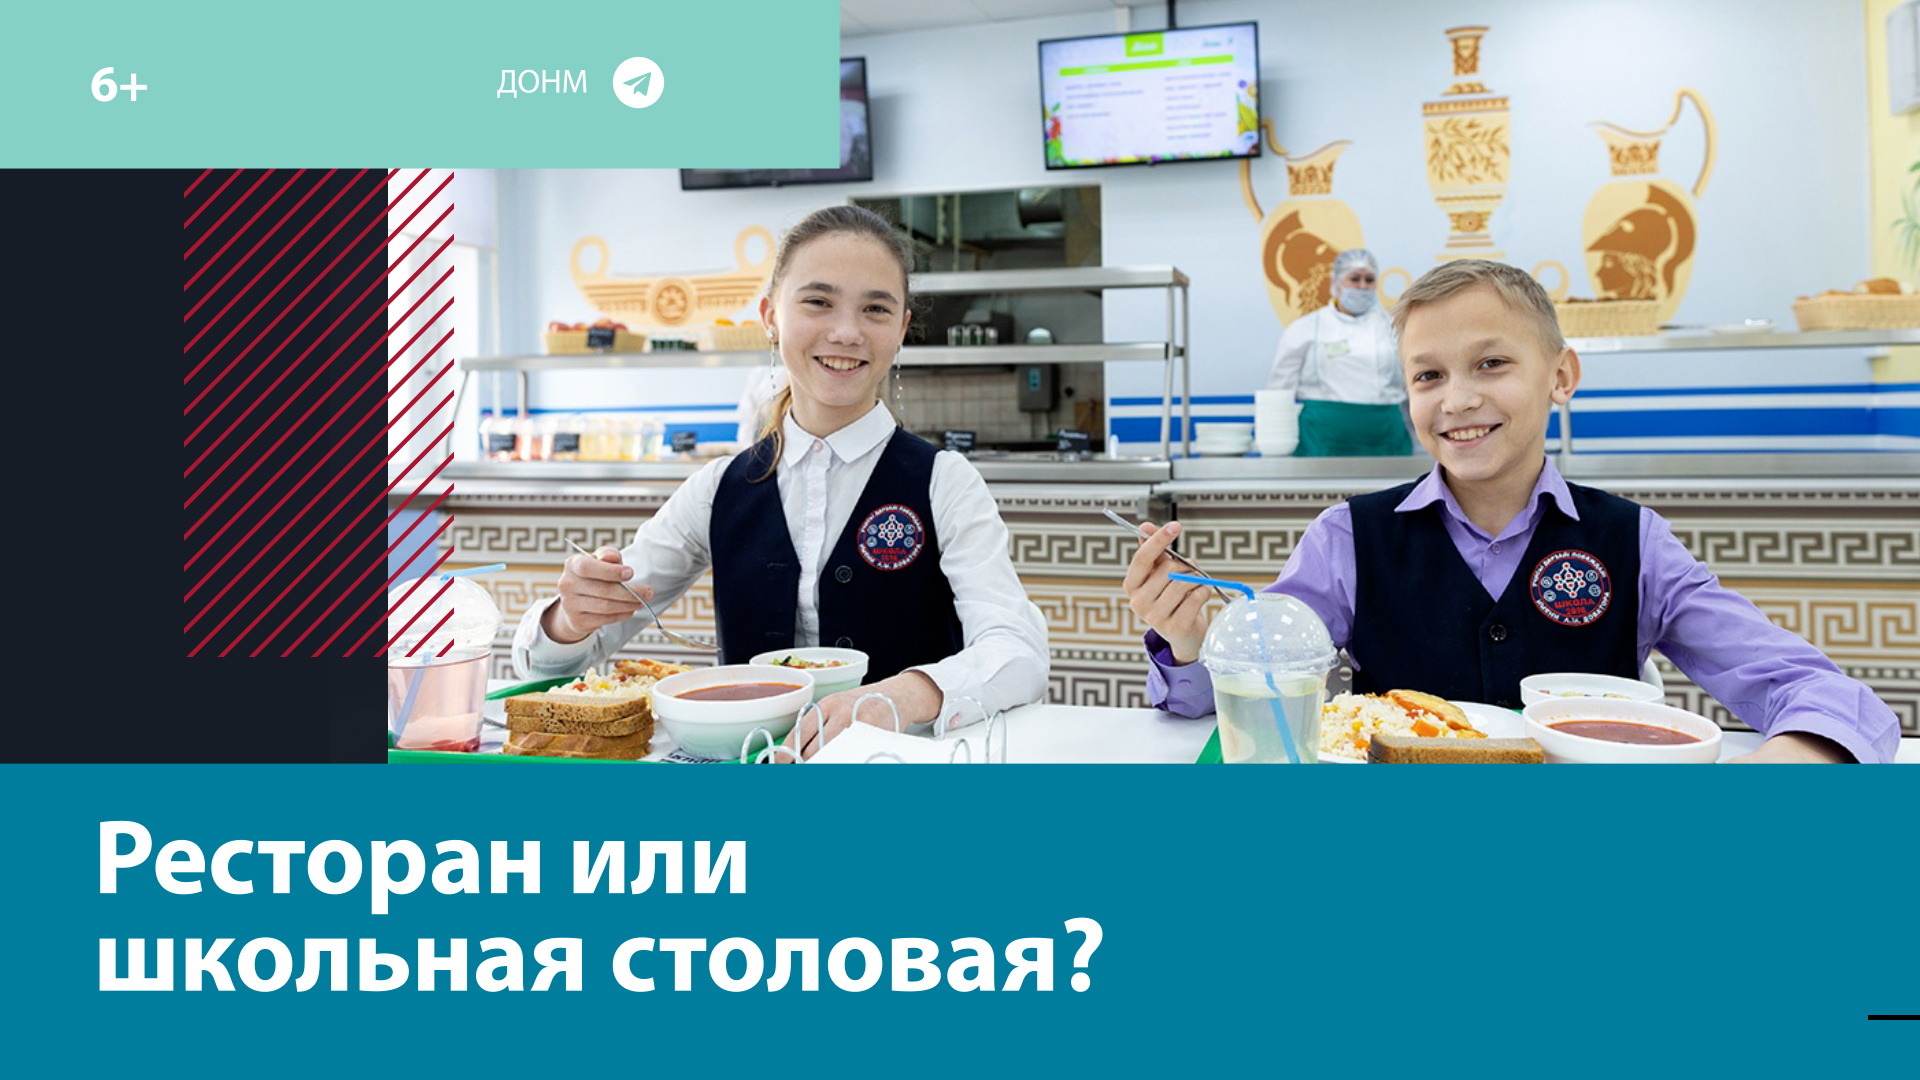 Как изменилось питание в школах Москвы? — Москва FM